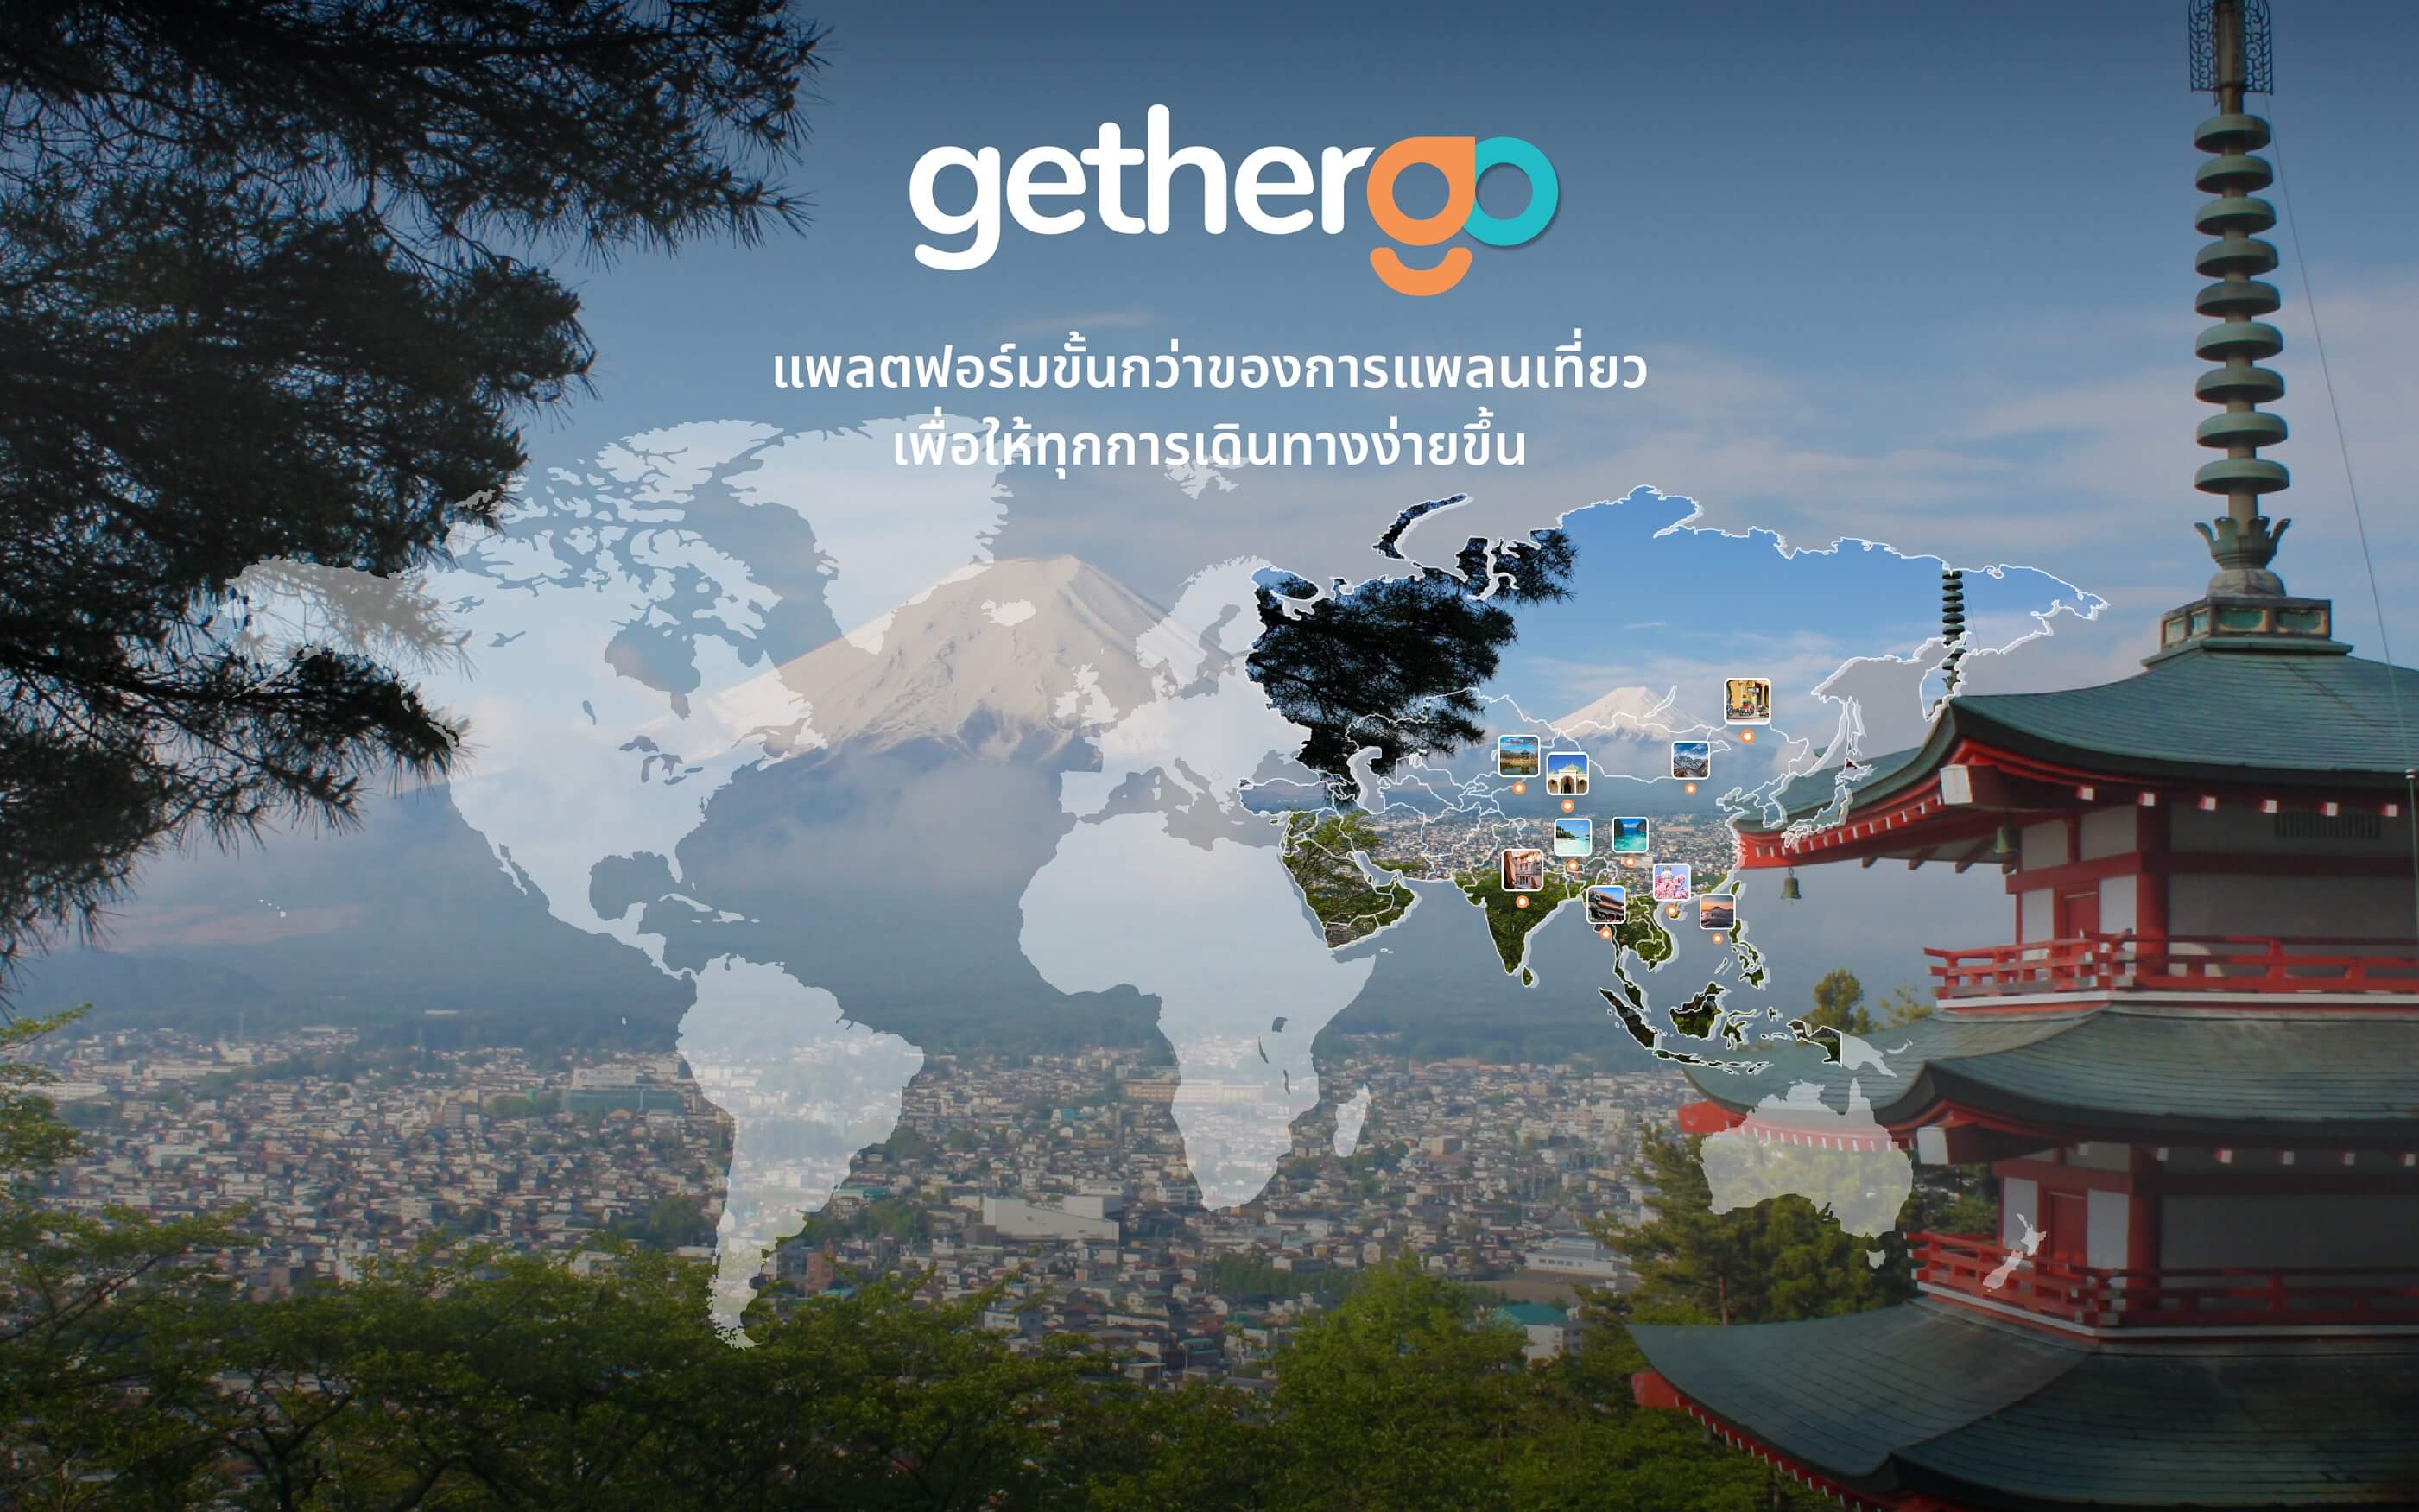 เปิดตัว gethergo แพลตฟอร์มสัญชาติไทย เติมเต็มประสบการณ์การท่องเที่ยว เพื่อขั้นกว่าของการแพลนเที่ยว 